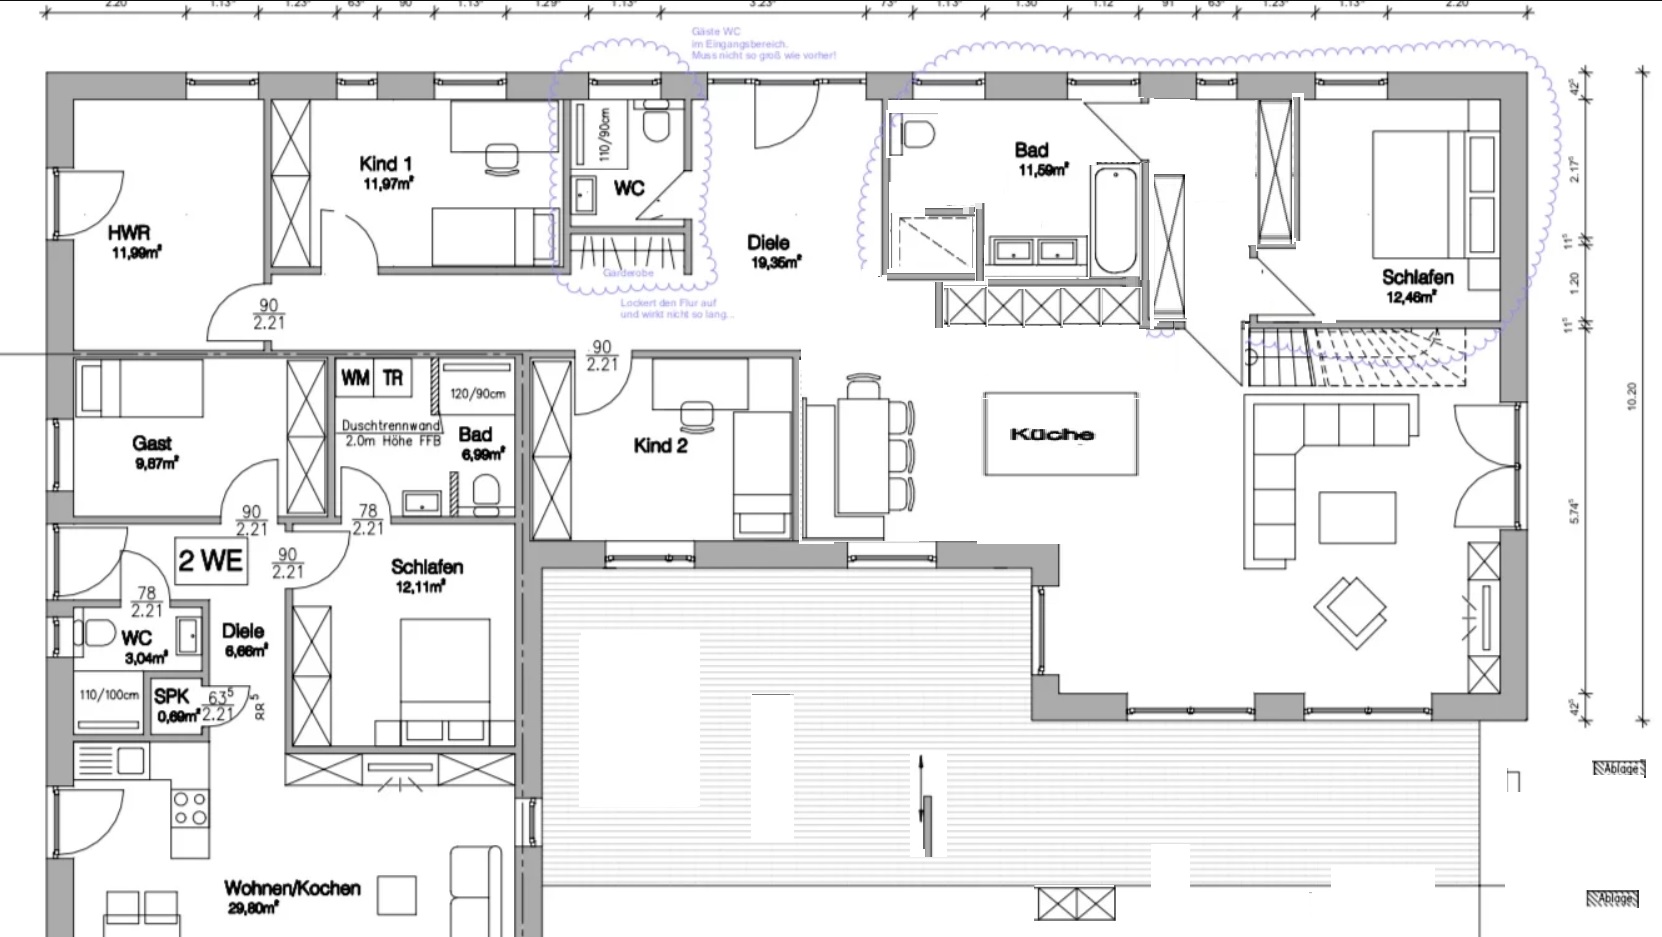 grundriss-bungalow-mit-einliegerwohnung-grundriss-feedback-251999-1.jpg